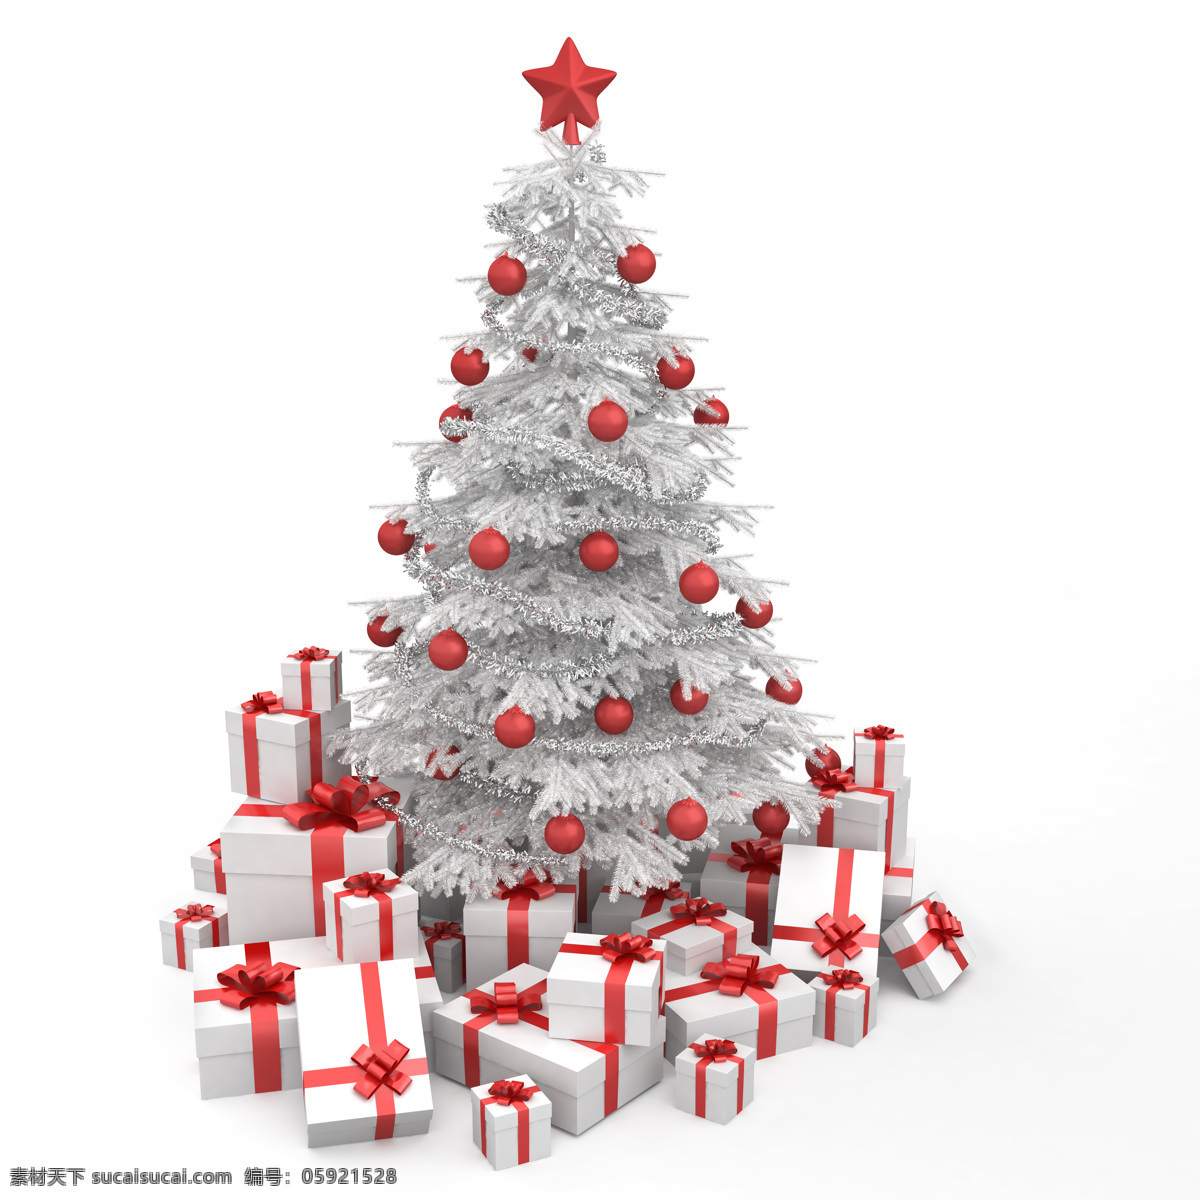 圣诞 礼物 圣诞树 圣诞礼物 礼包 礼品 圣诞球 圣诞节素材 节日庆典 生活百科